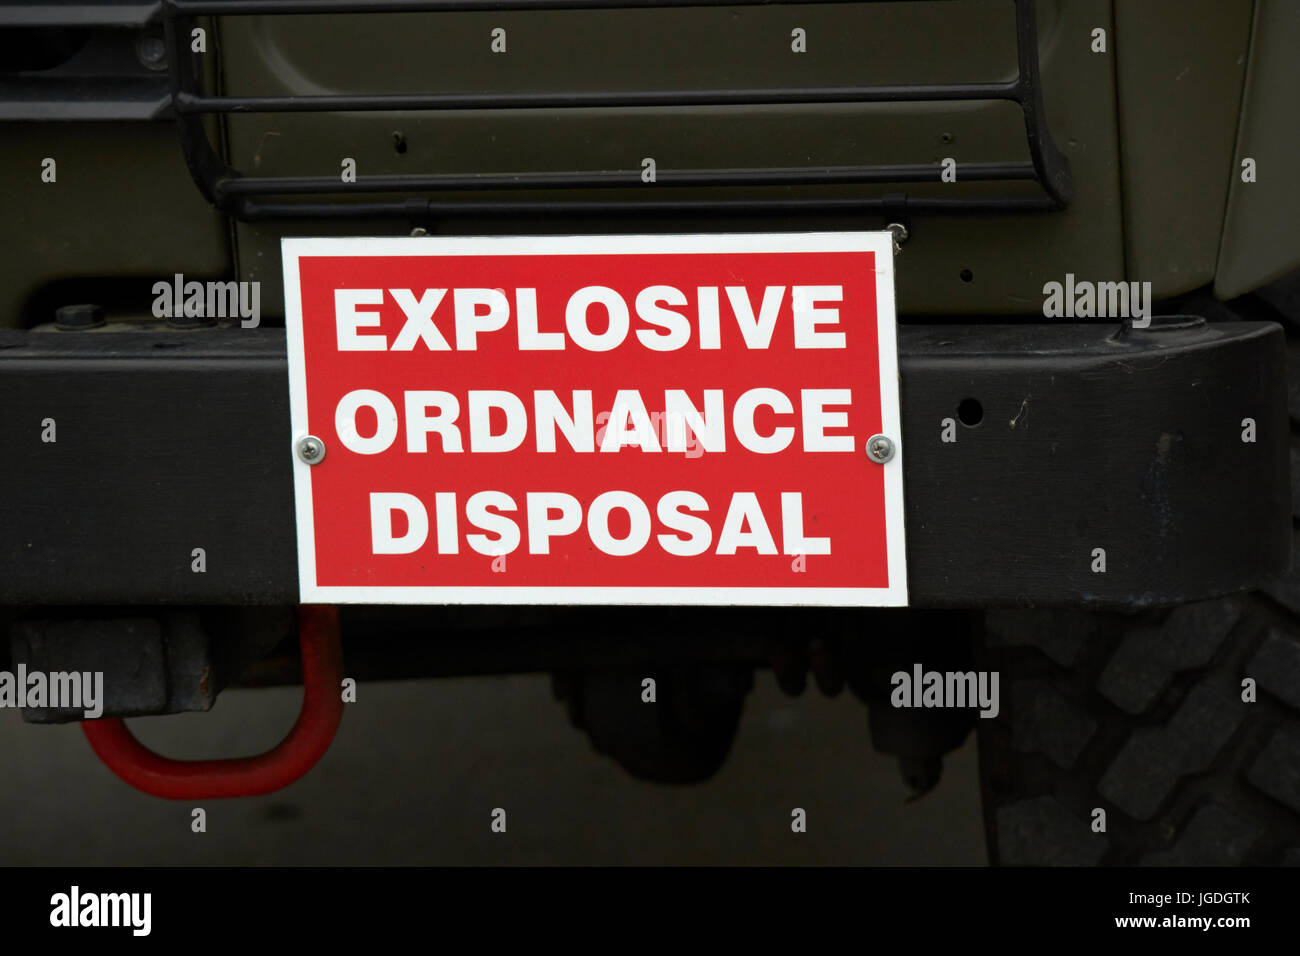 L'élimination des explosifs et munitions landrover armée britannique uk Banque D'Images